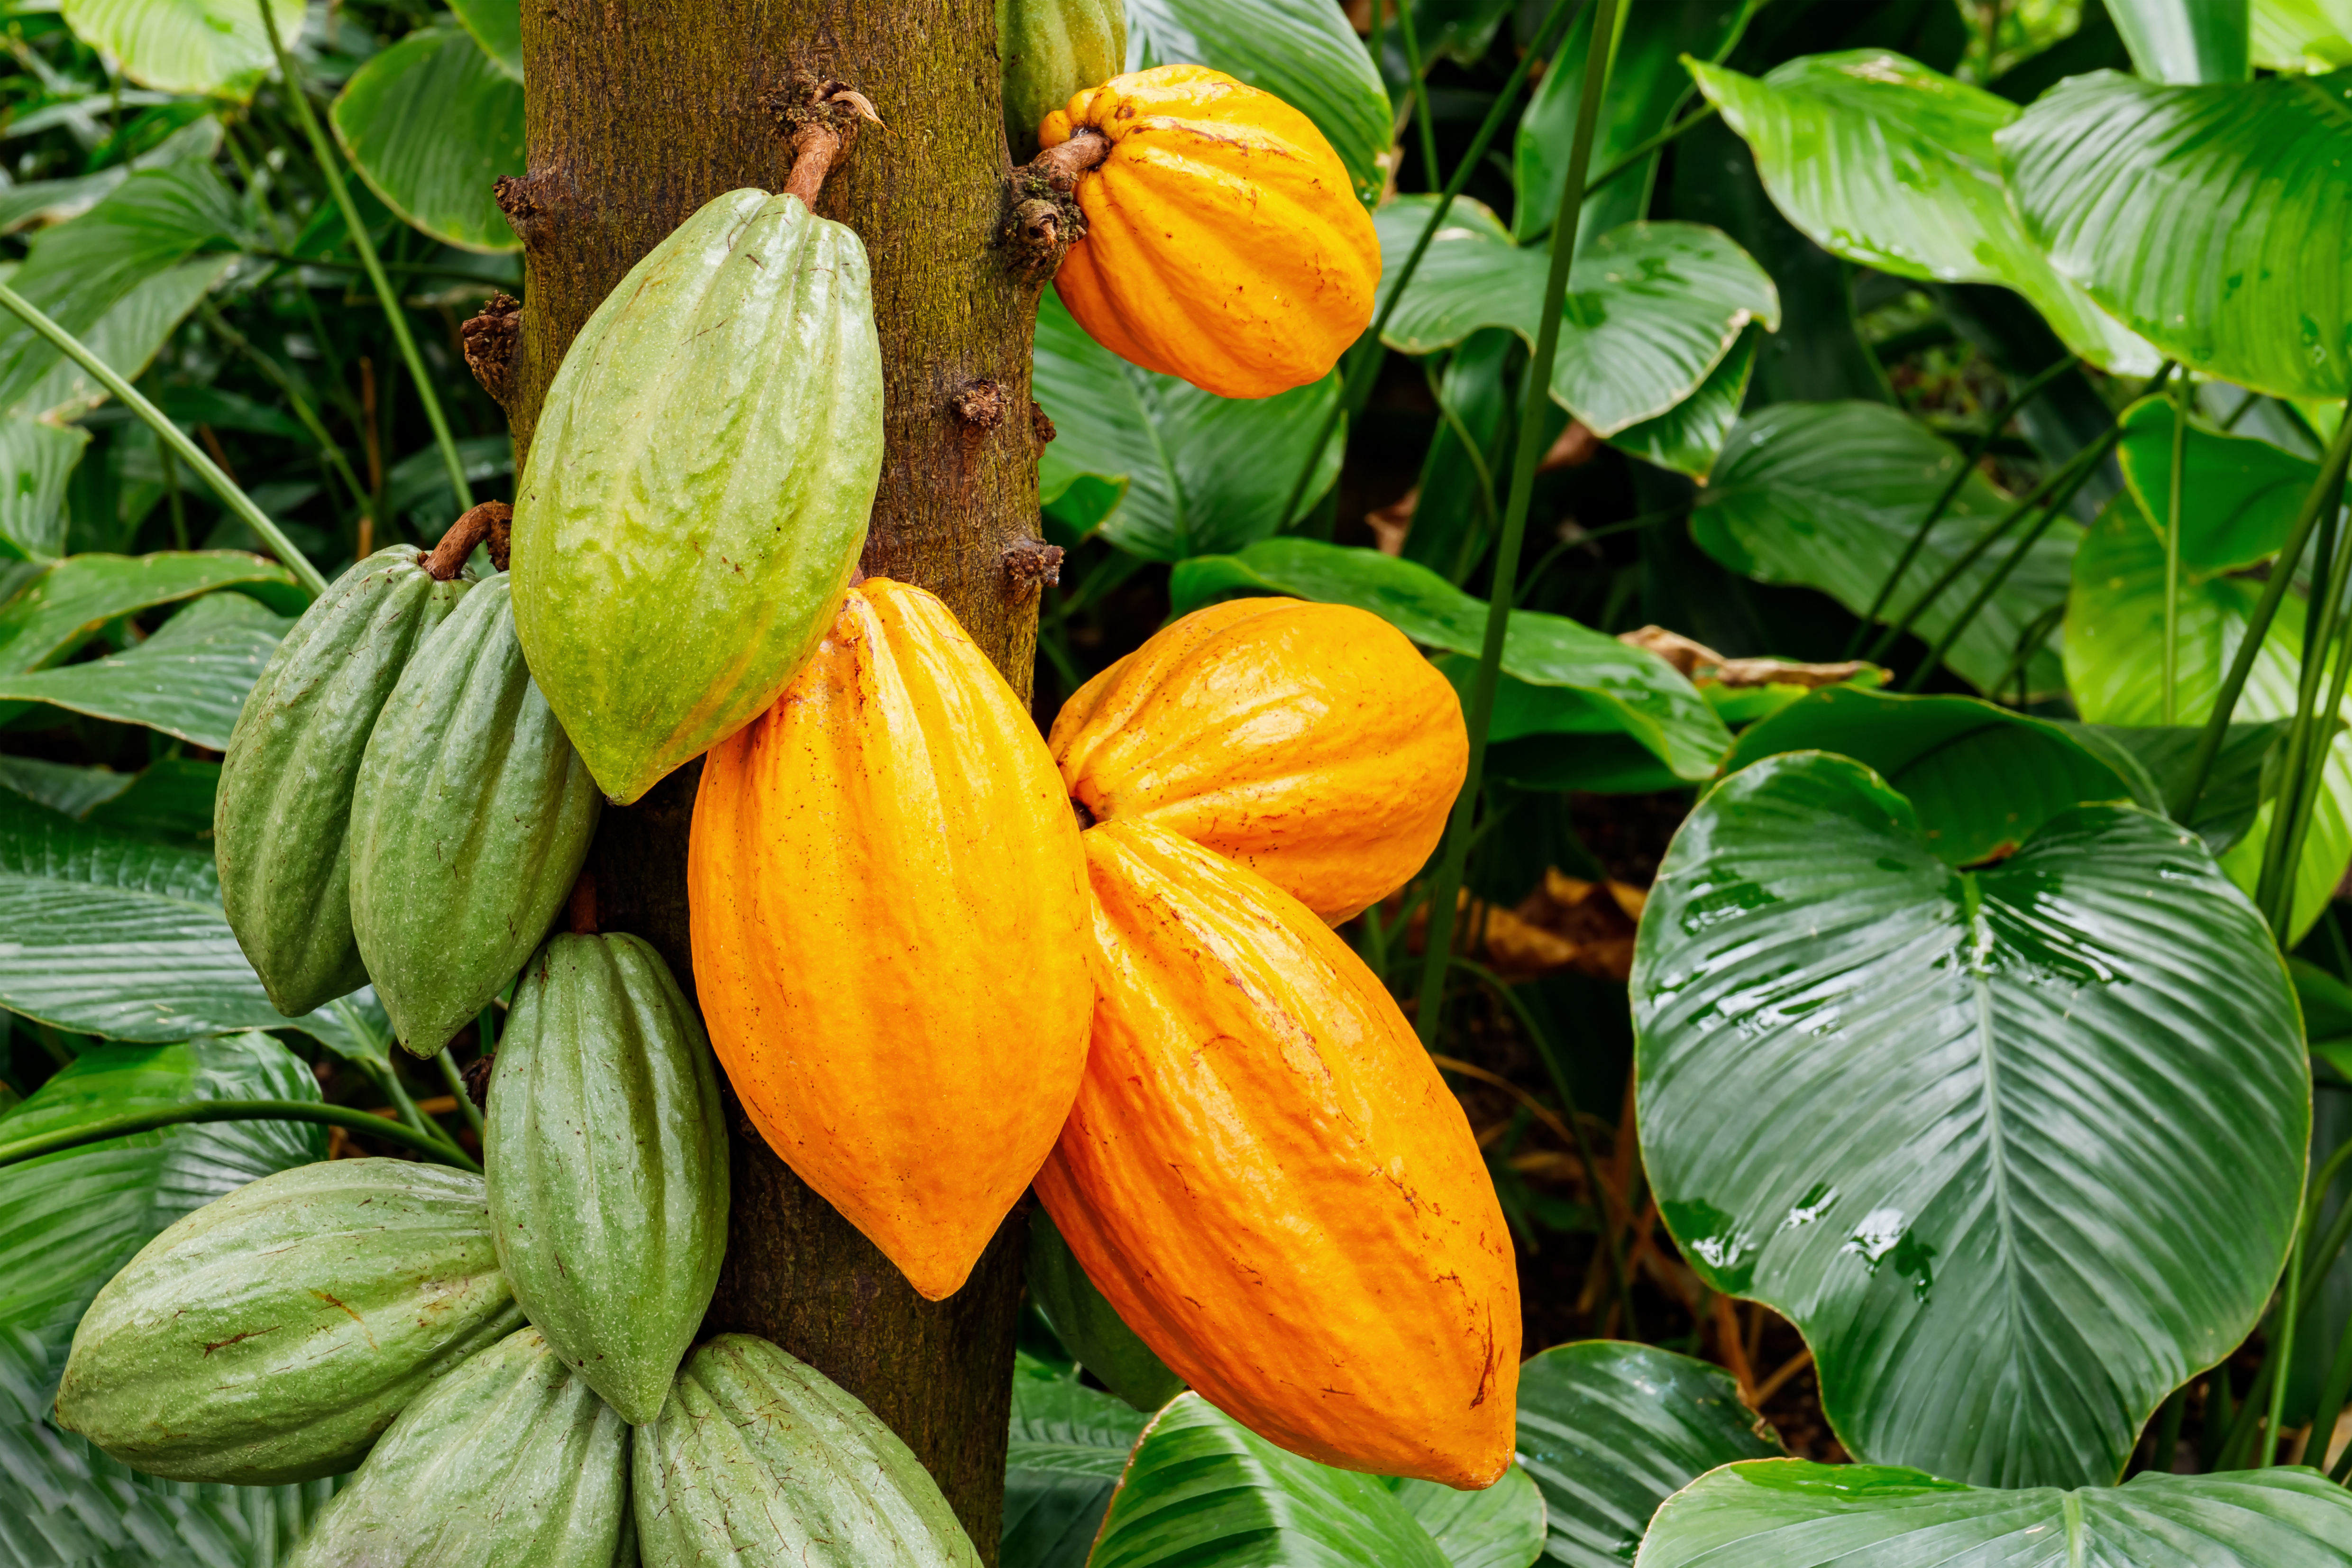     La filière cacao de Martinique continue à se structurer et cherche des financements pour s’équiper 

